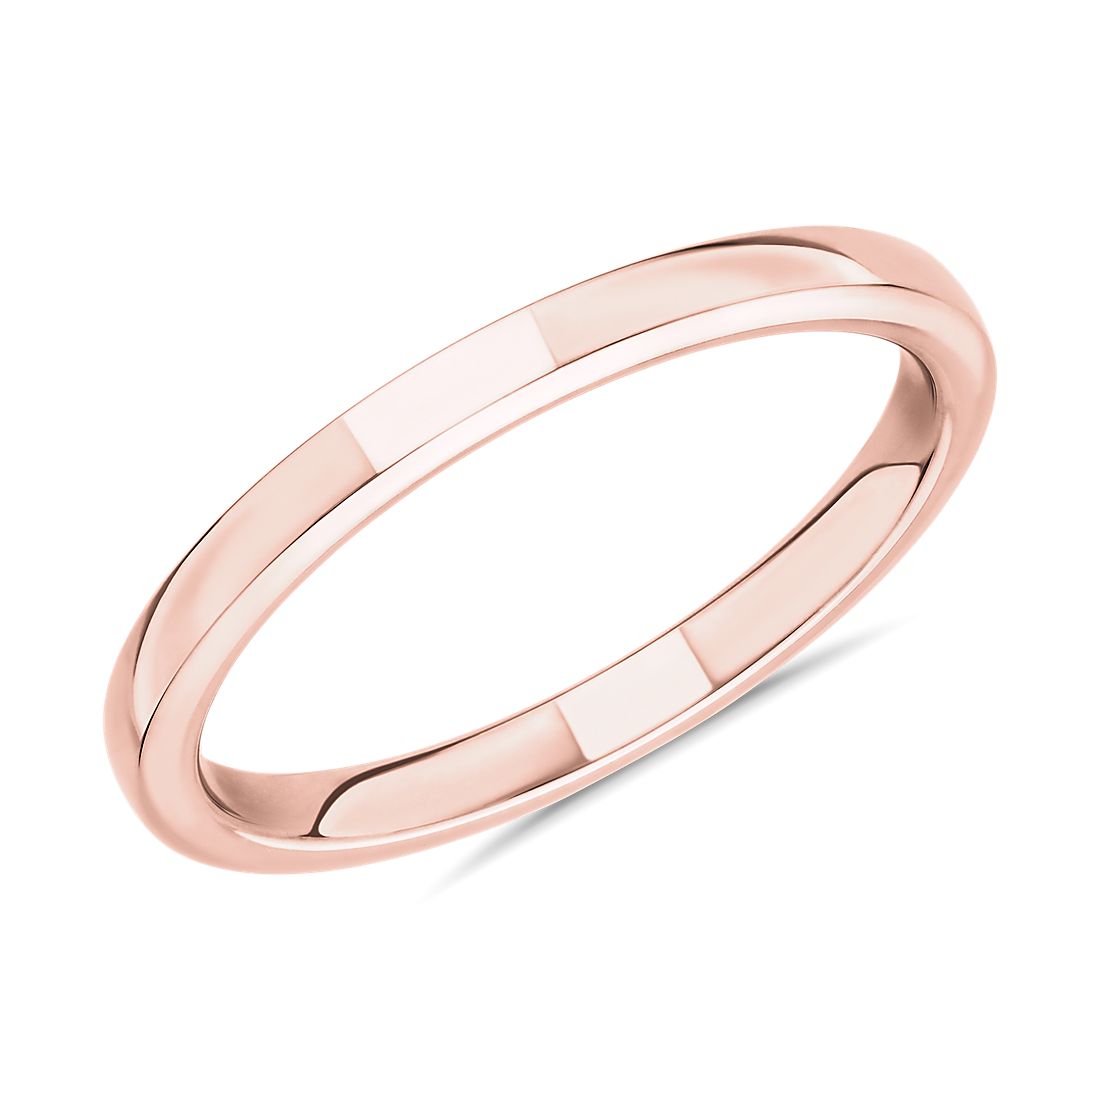 Skyline Comfort Fit Wedding Ring in 14k Rose Gold (2 mm)